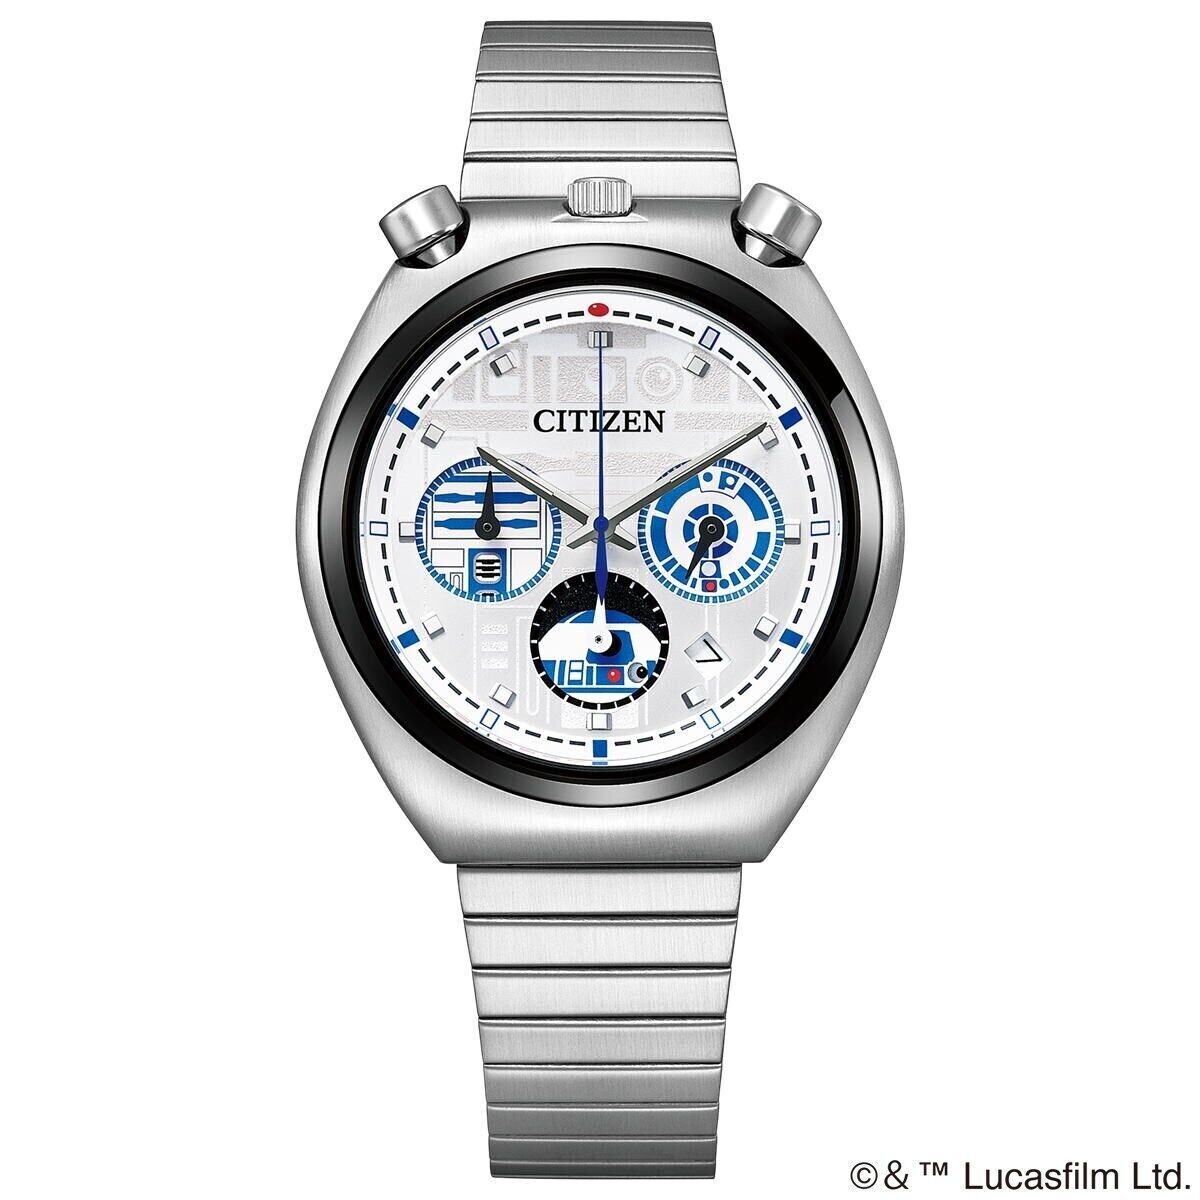 reloj unisex Citizen AN3666-51A 38mm Tsuno Chrono Star Wars R2-D2 2022 Limited 600 50m WR cuarzo correa de acero